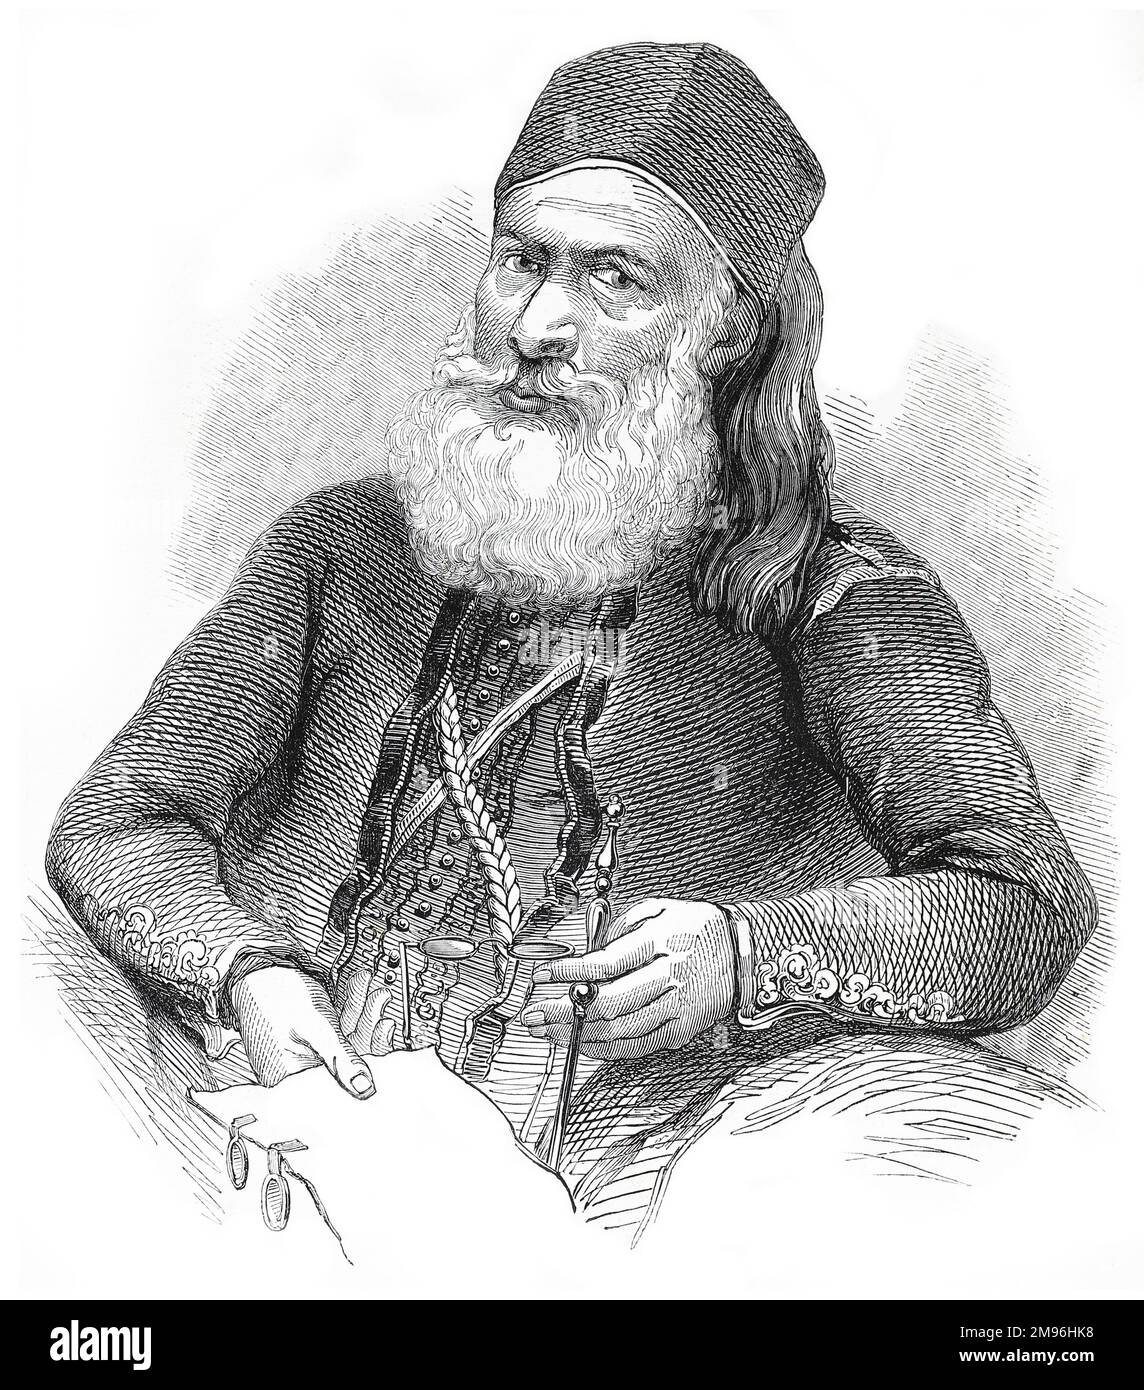 Portrait de Mehemet Ali Pasha d'Égypte; Illustration noire et blanche de la London Illustrated News; août 1844. Banque D'Images